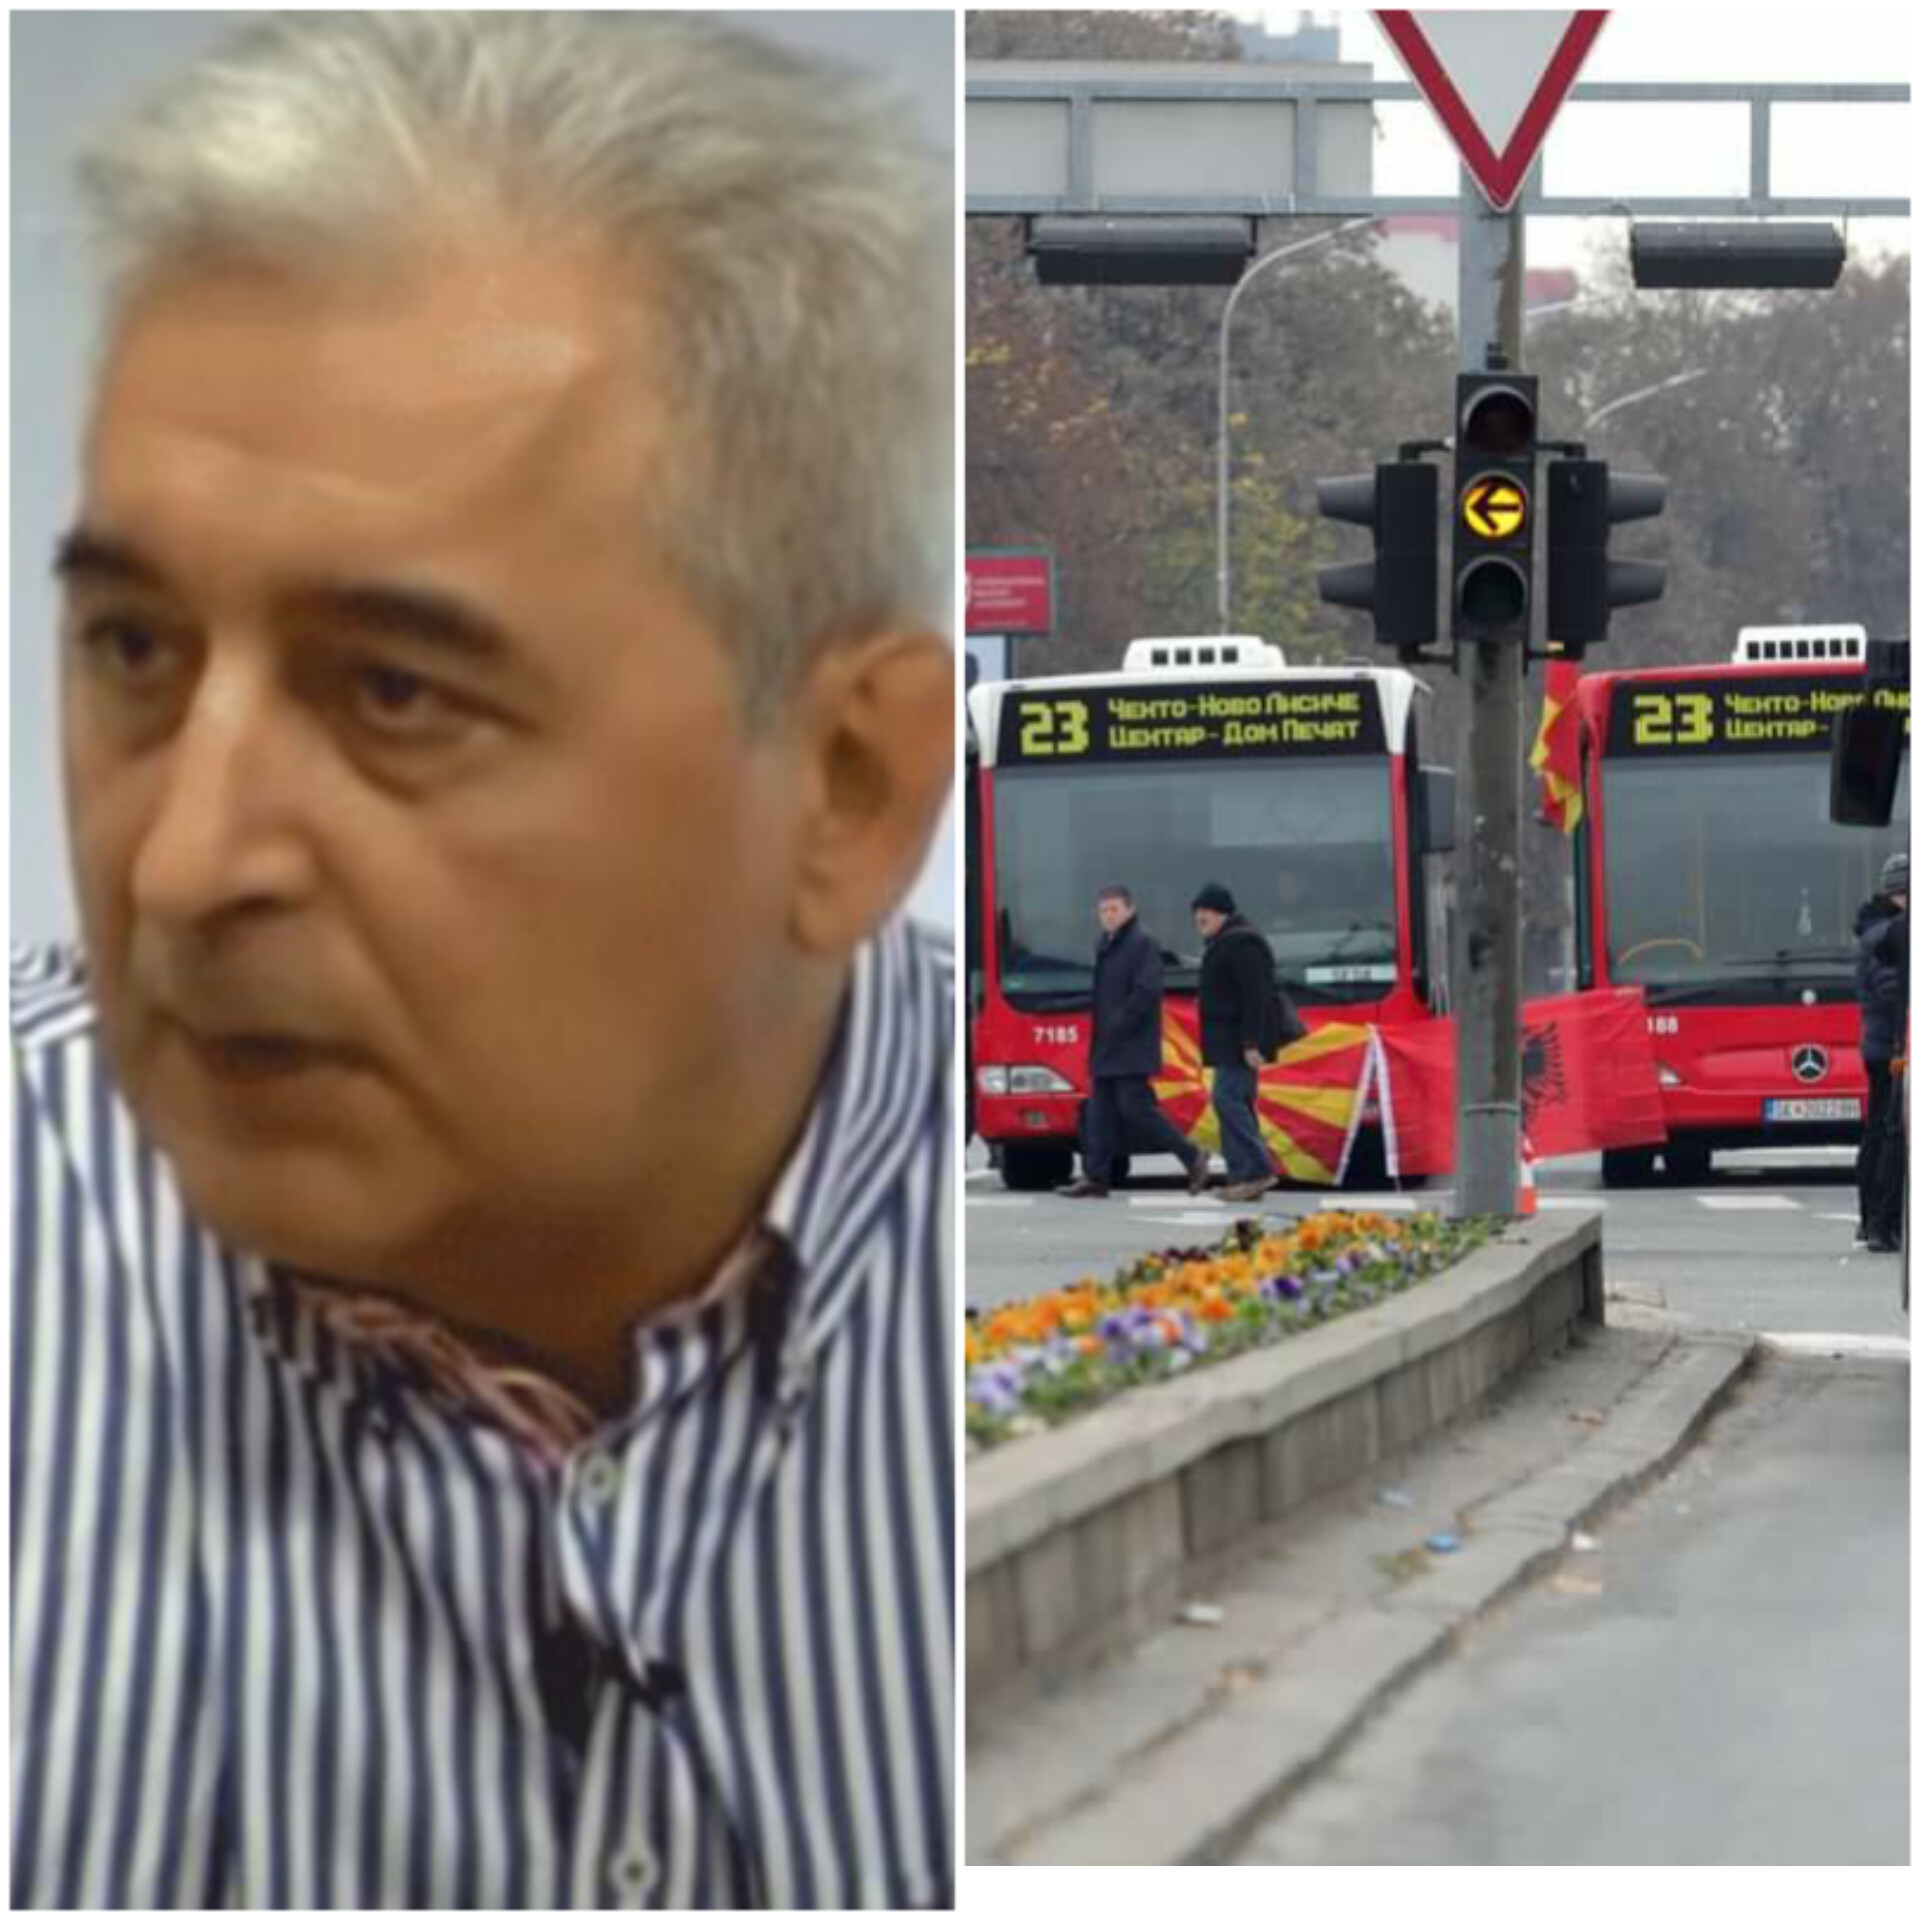 Penov: Qeveria ka instrument për të thyer bllokadën duke hequr me forcë autobusët